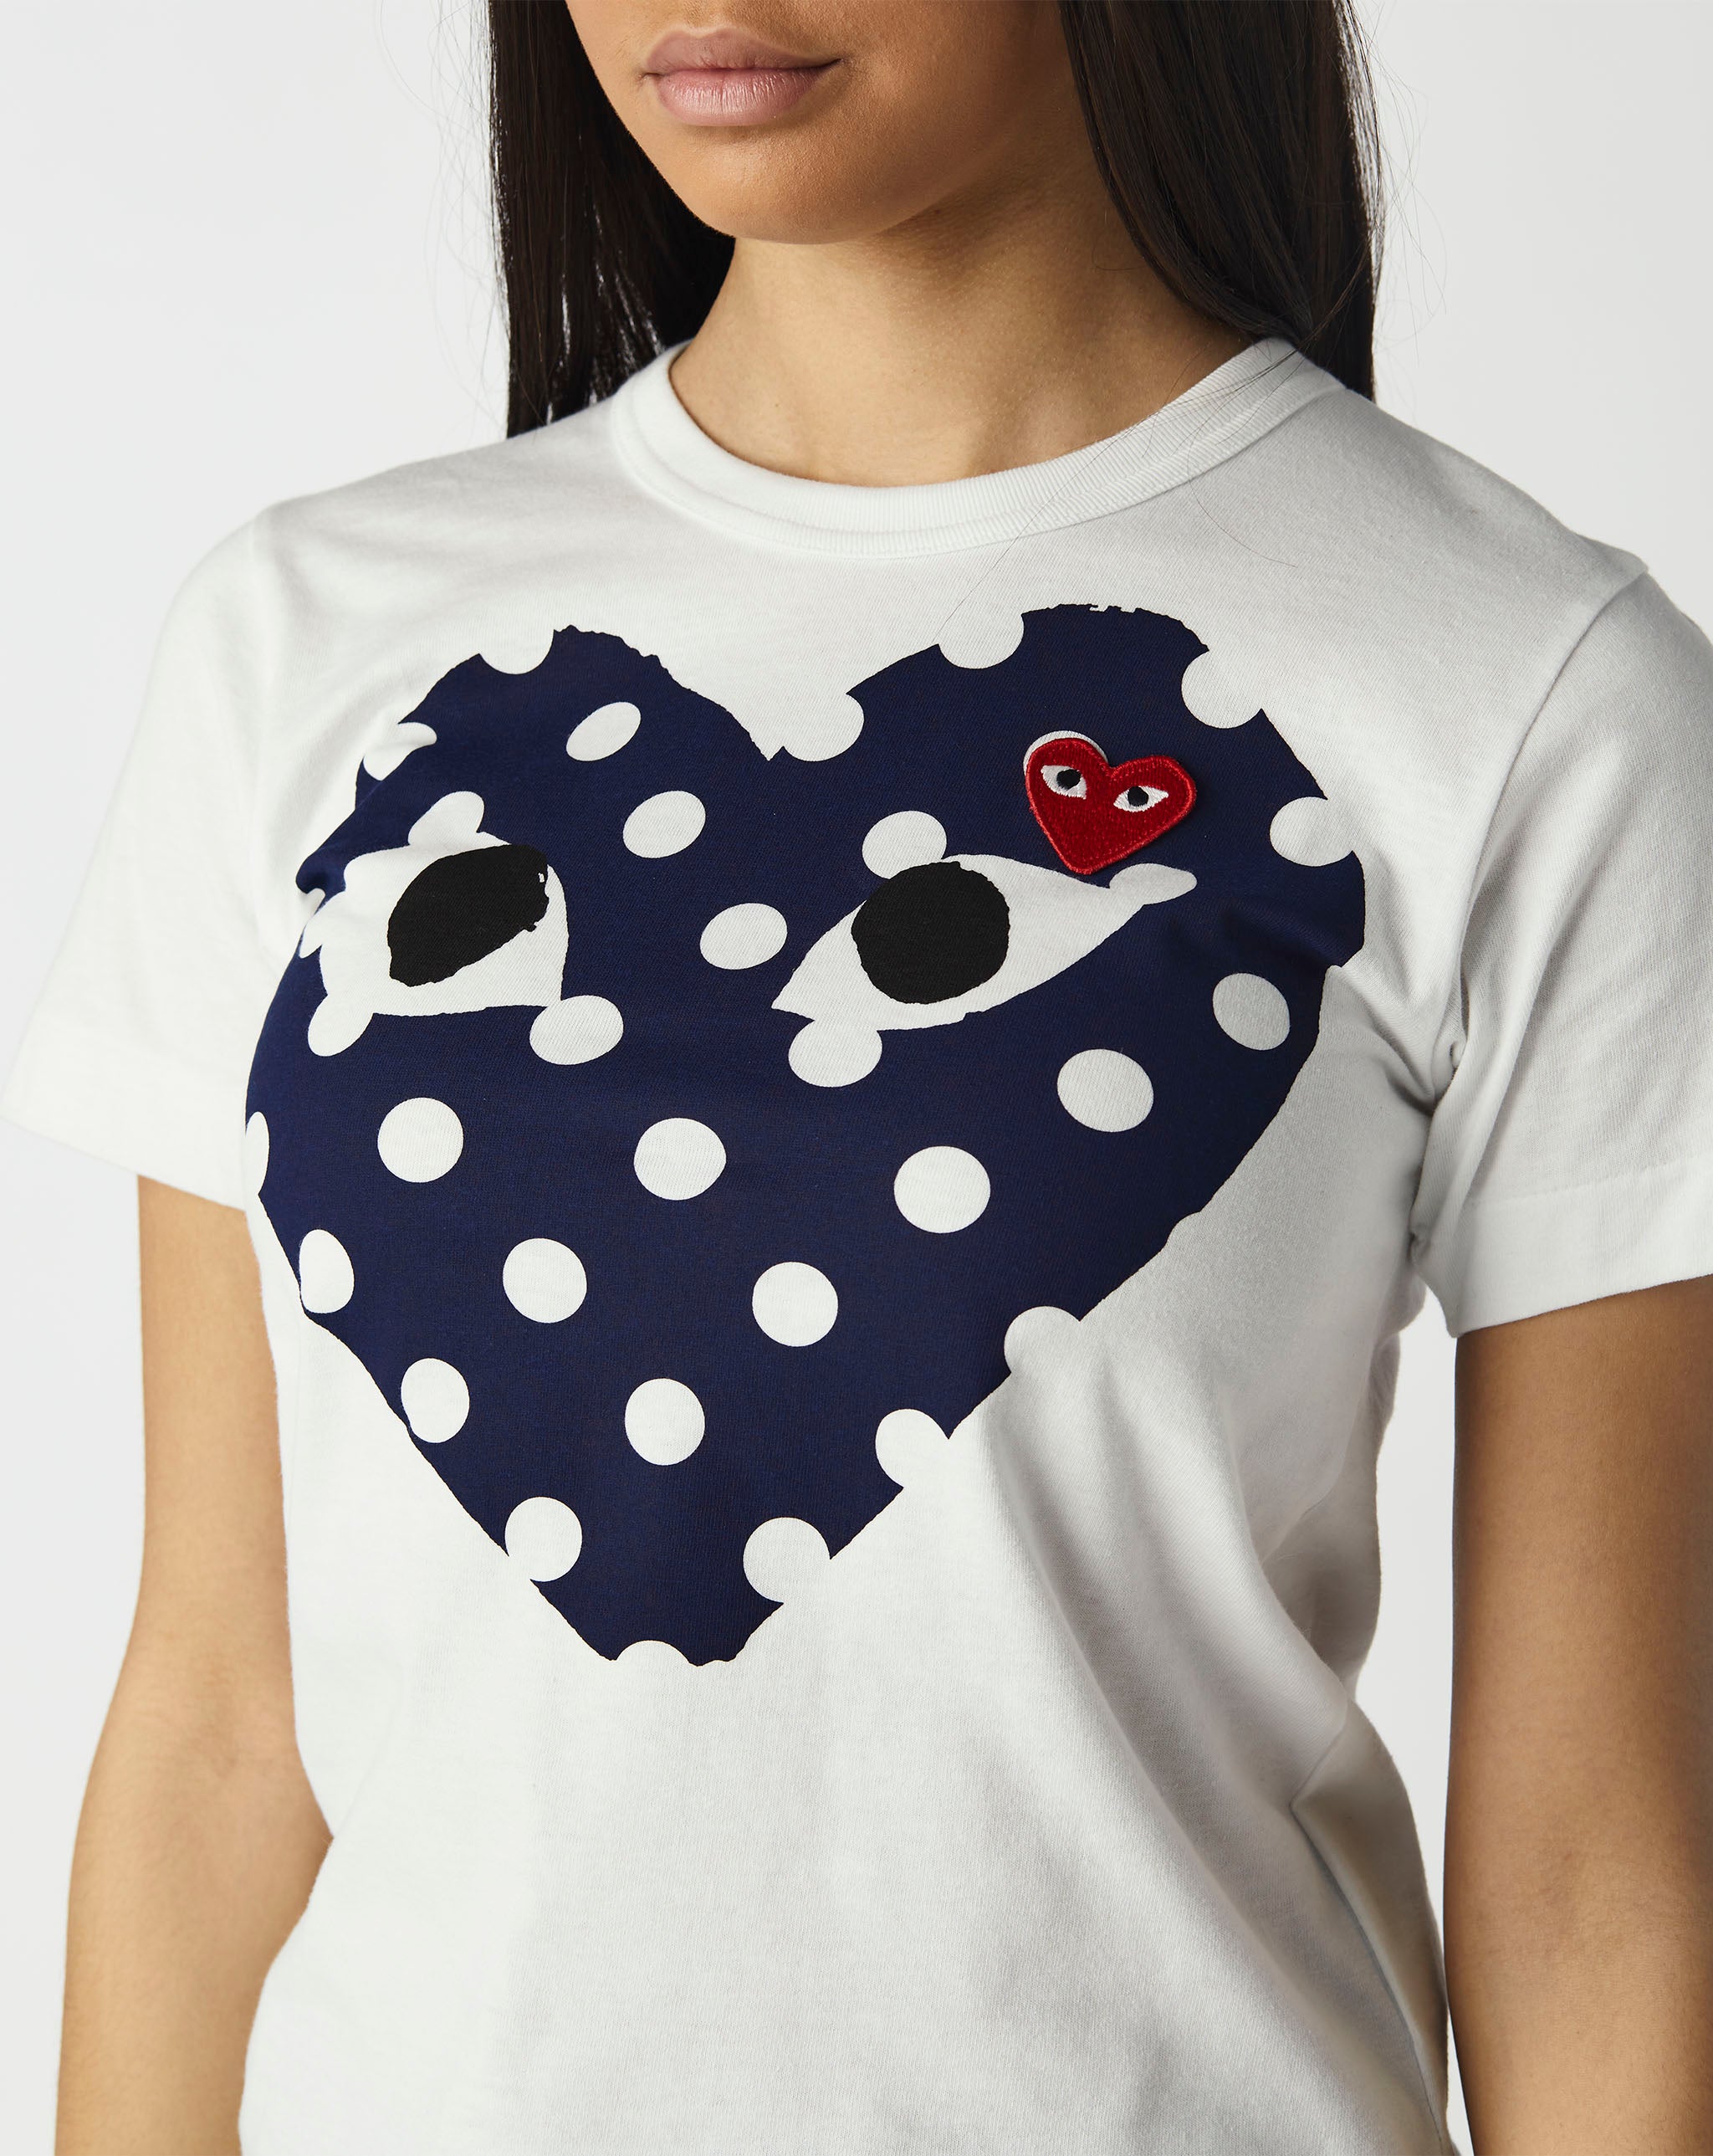 Womens Heart T-Shirt Women's Play Polka Dot T-Shirt  - Cheap Urlfreeze Jordan outlet